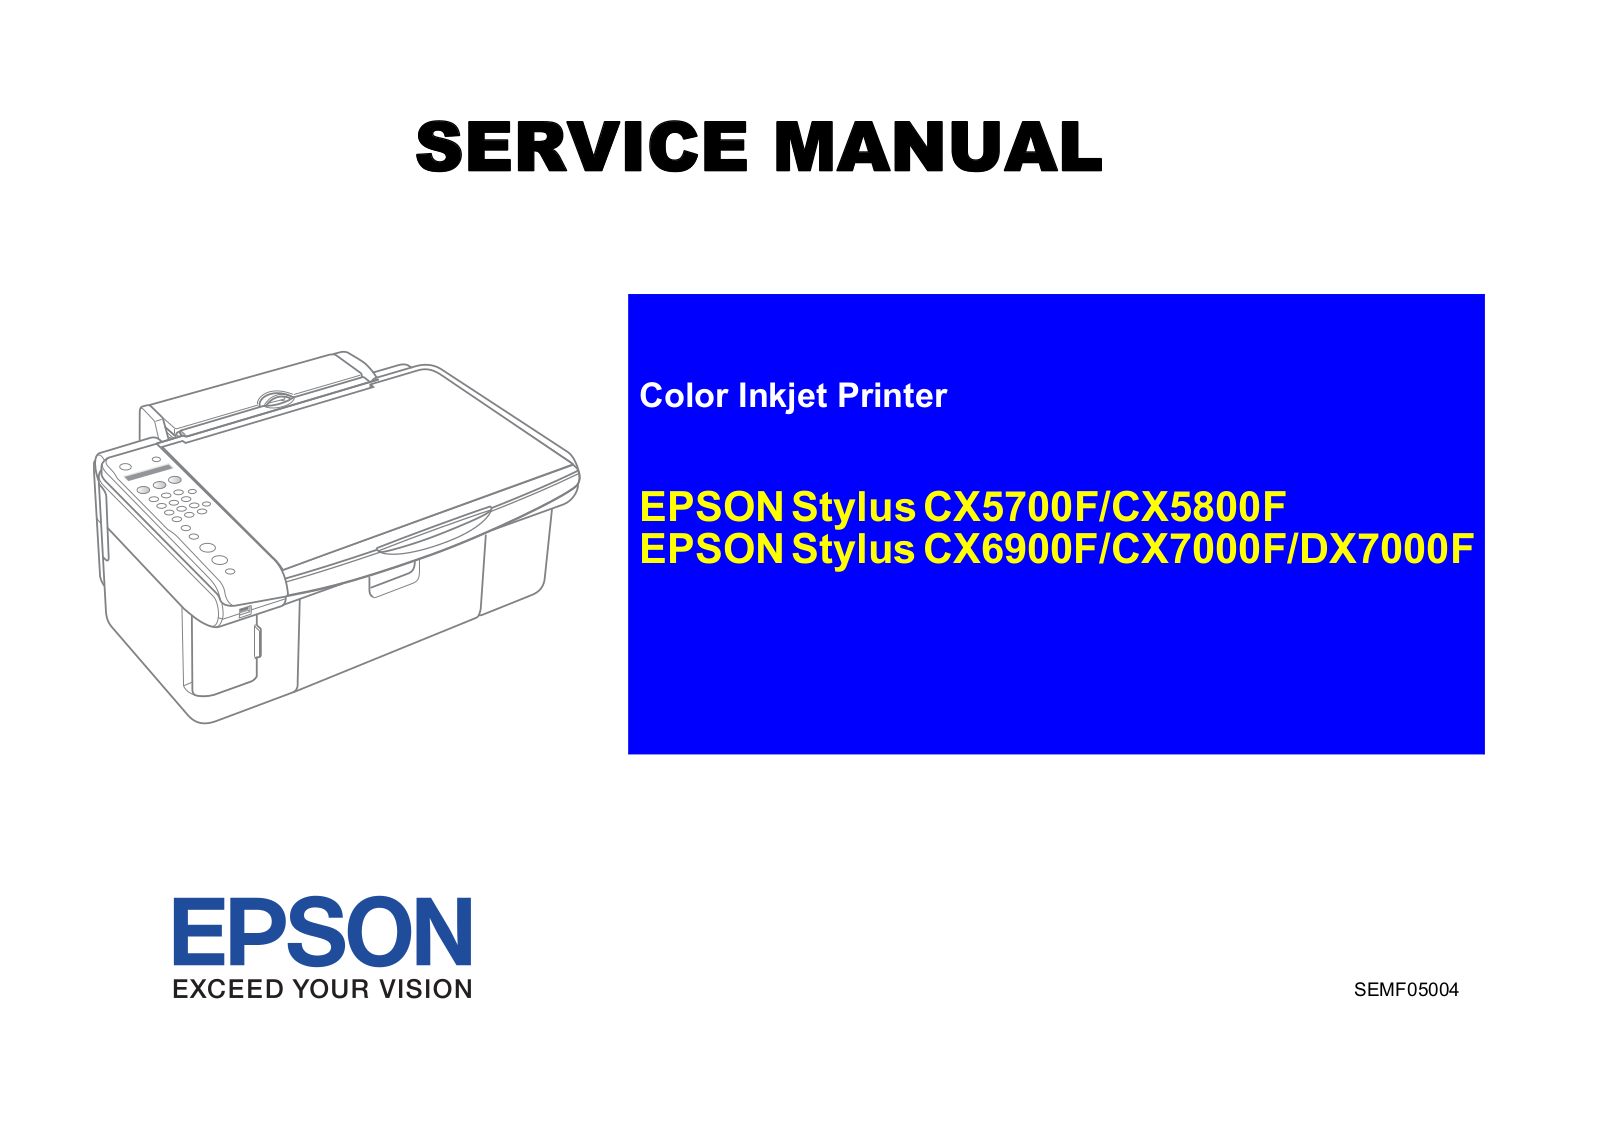 Epson Stylus CX5700F, Stylus CX5800F, Stylus CX6900F, Stylus CX7000F, Stylus DX7000F Service Manual